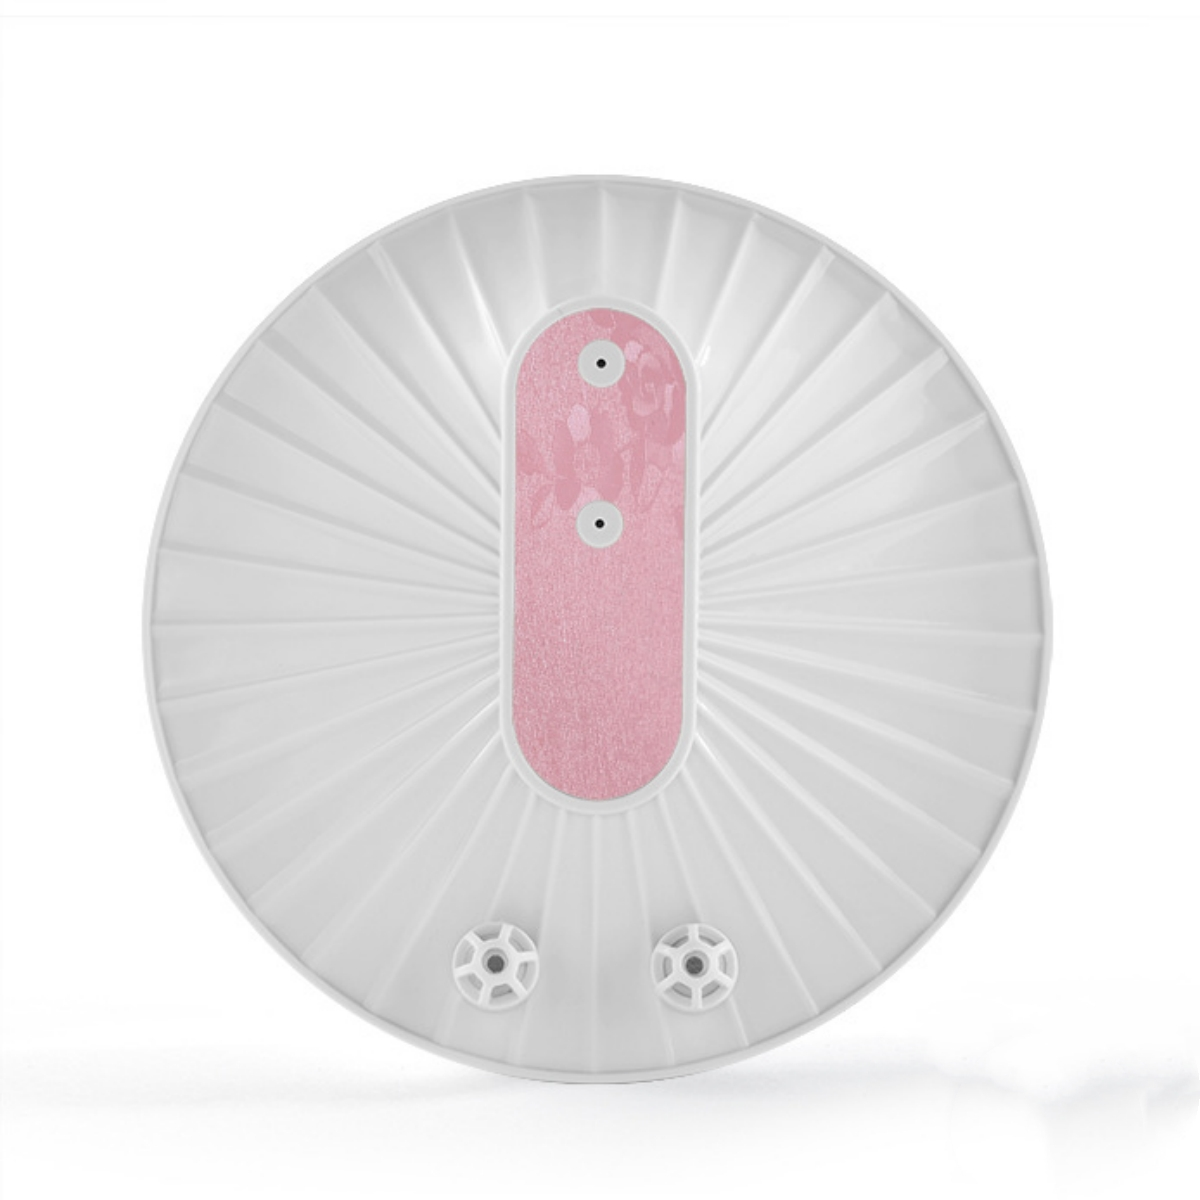 SYNTEK Ultraschall-Geschirrspüler Ultraschallreiniger All-in-One Kompakt Rosa Wiederaufladbar Tragbar